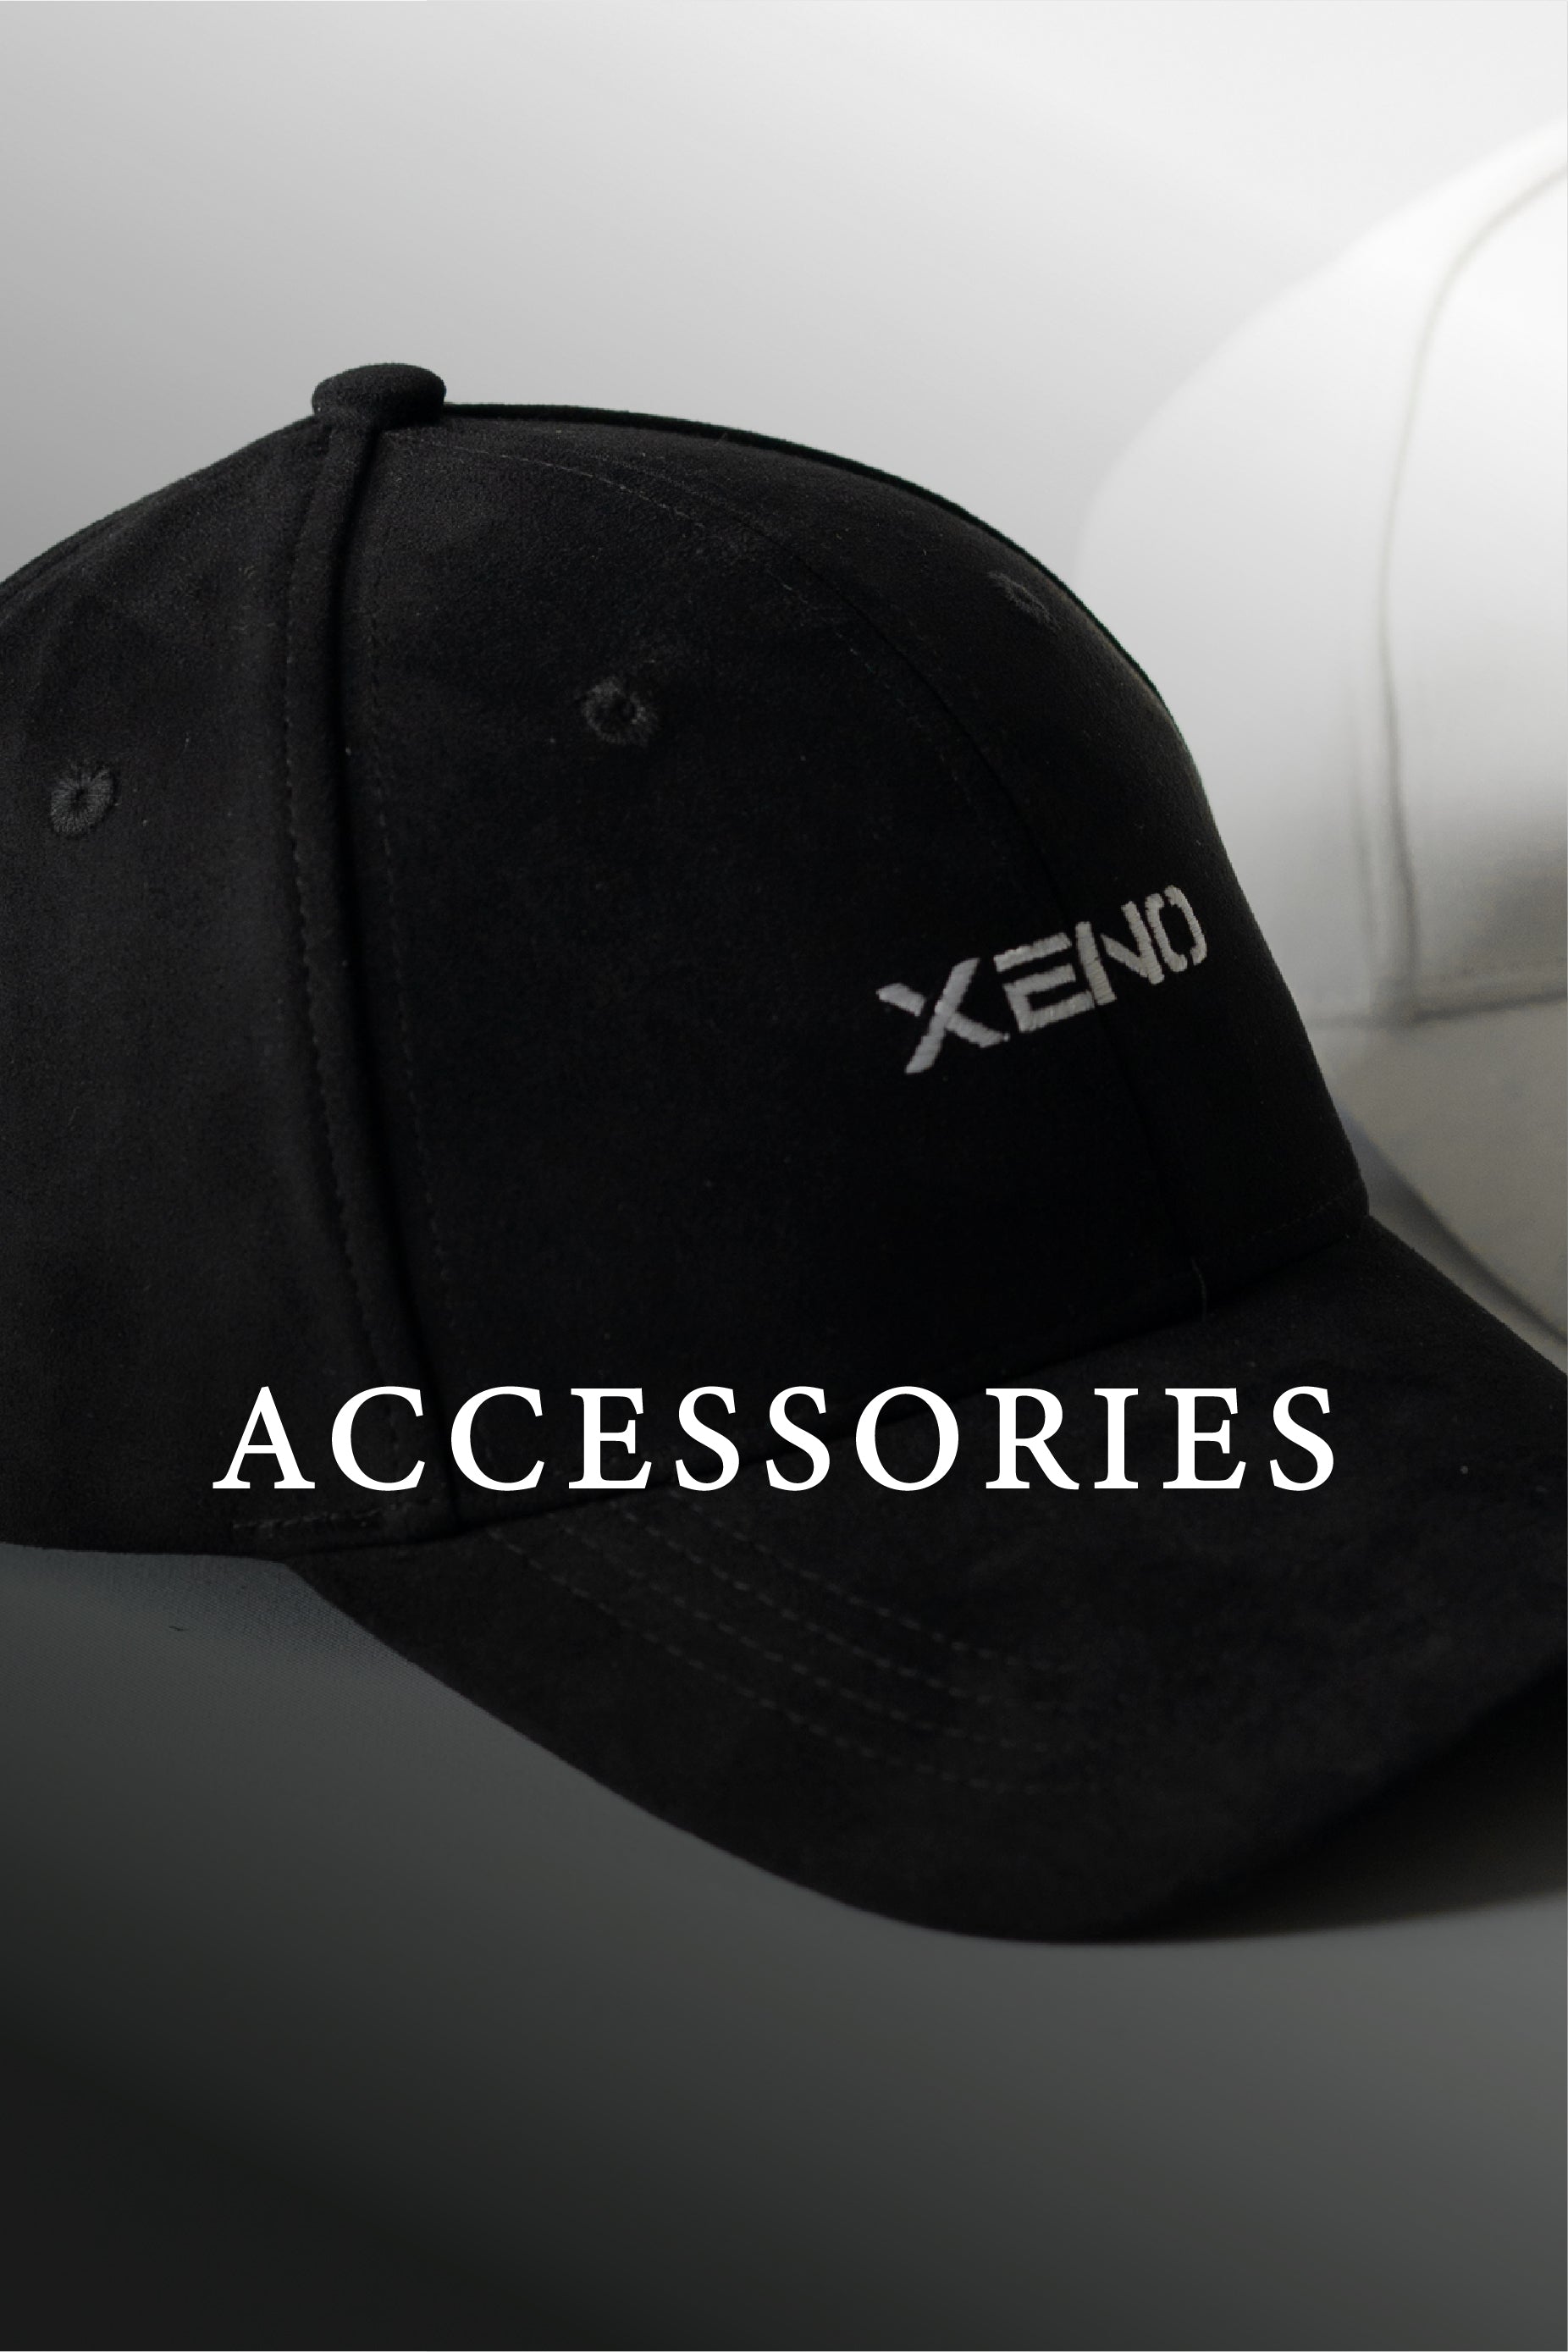 Accessories – XENO